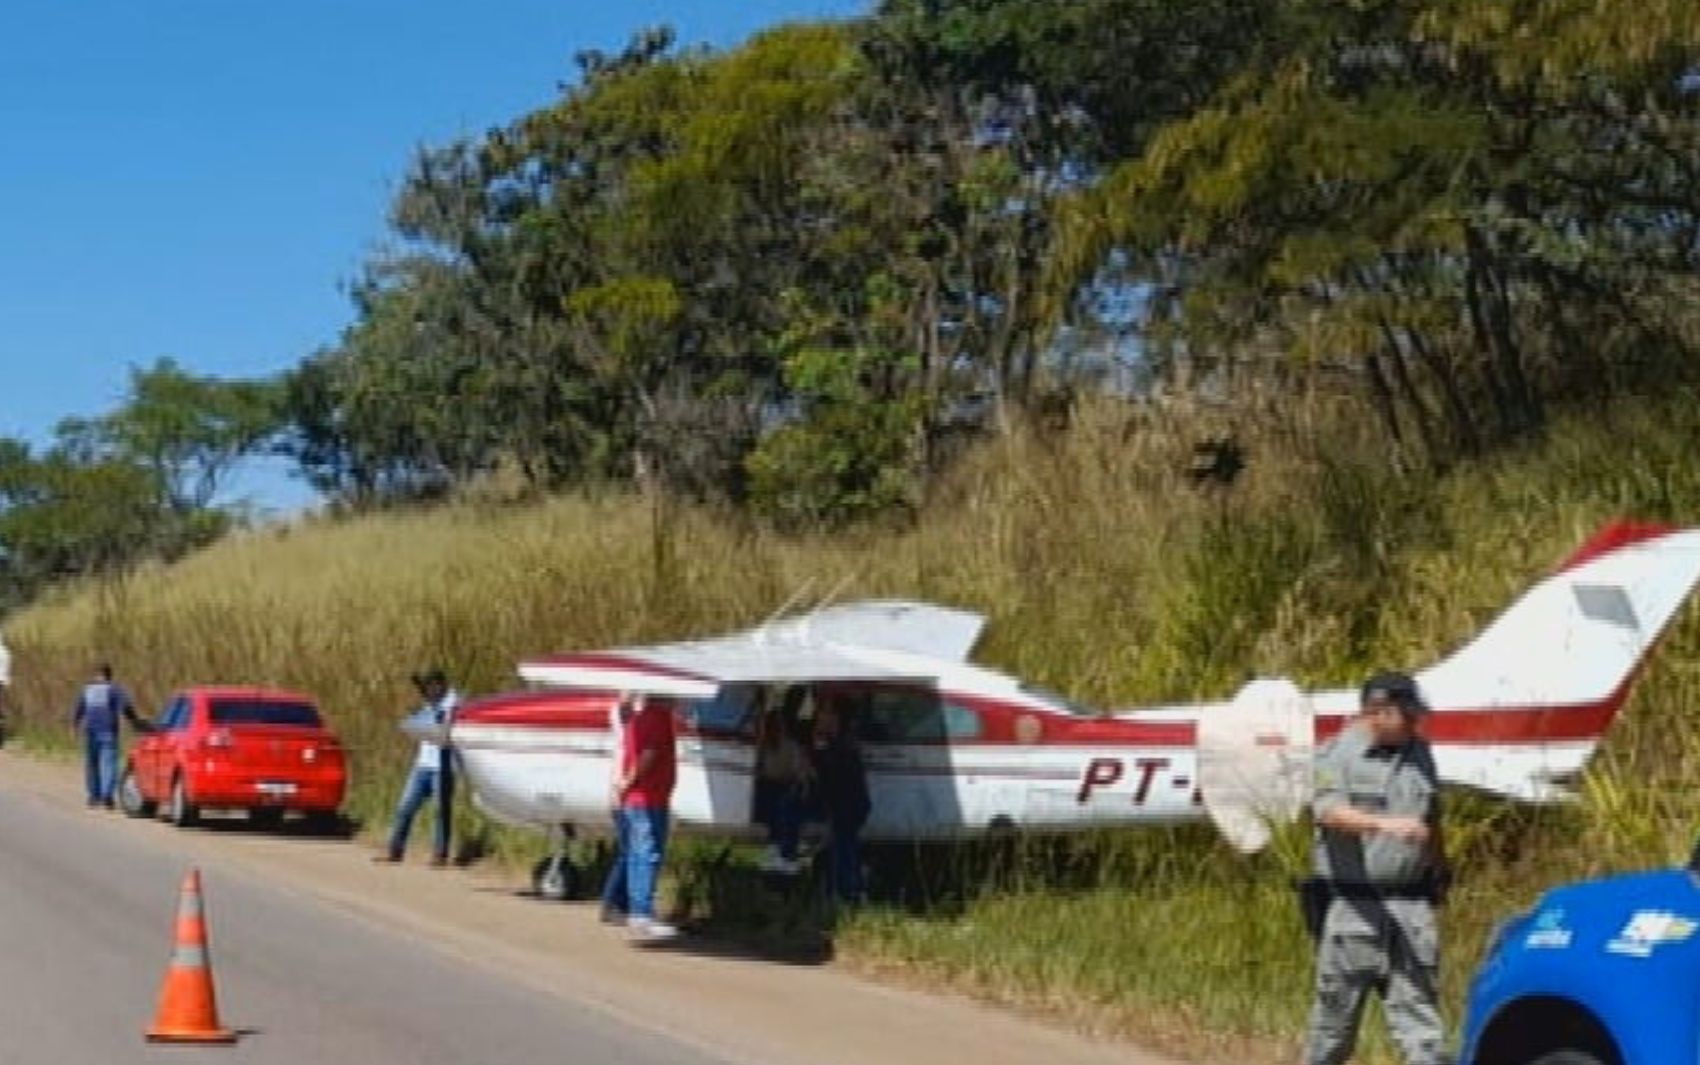 Avião faz pouso forçado em rodovia de Goiás